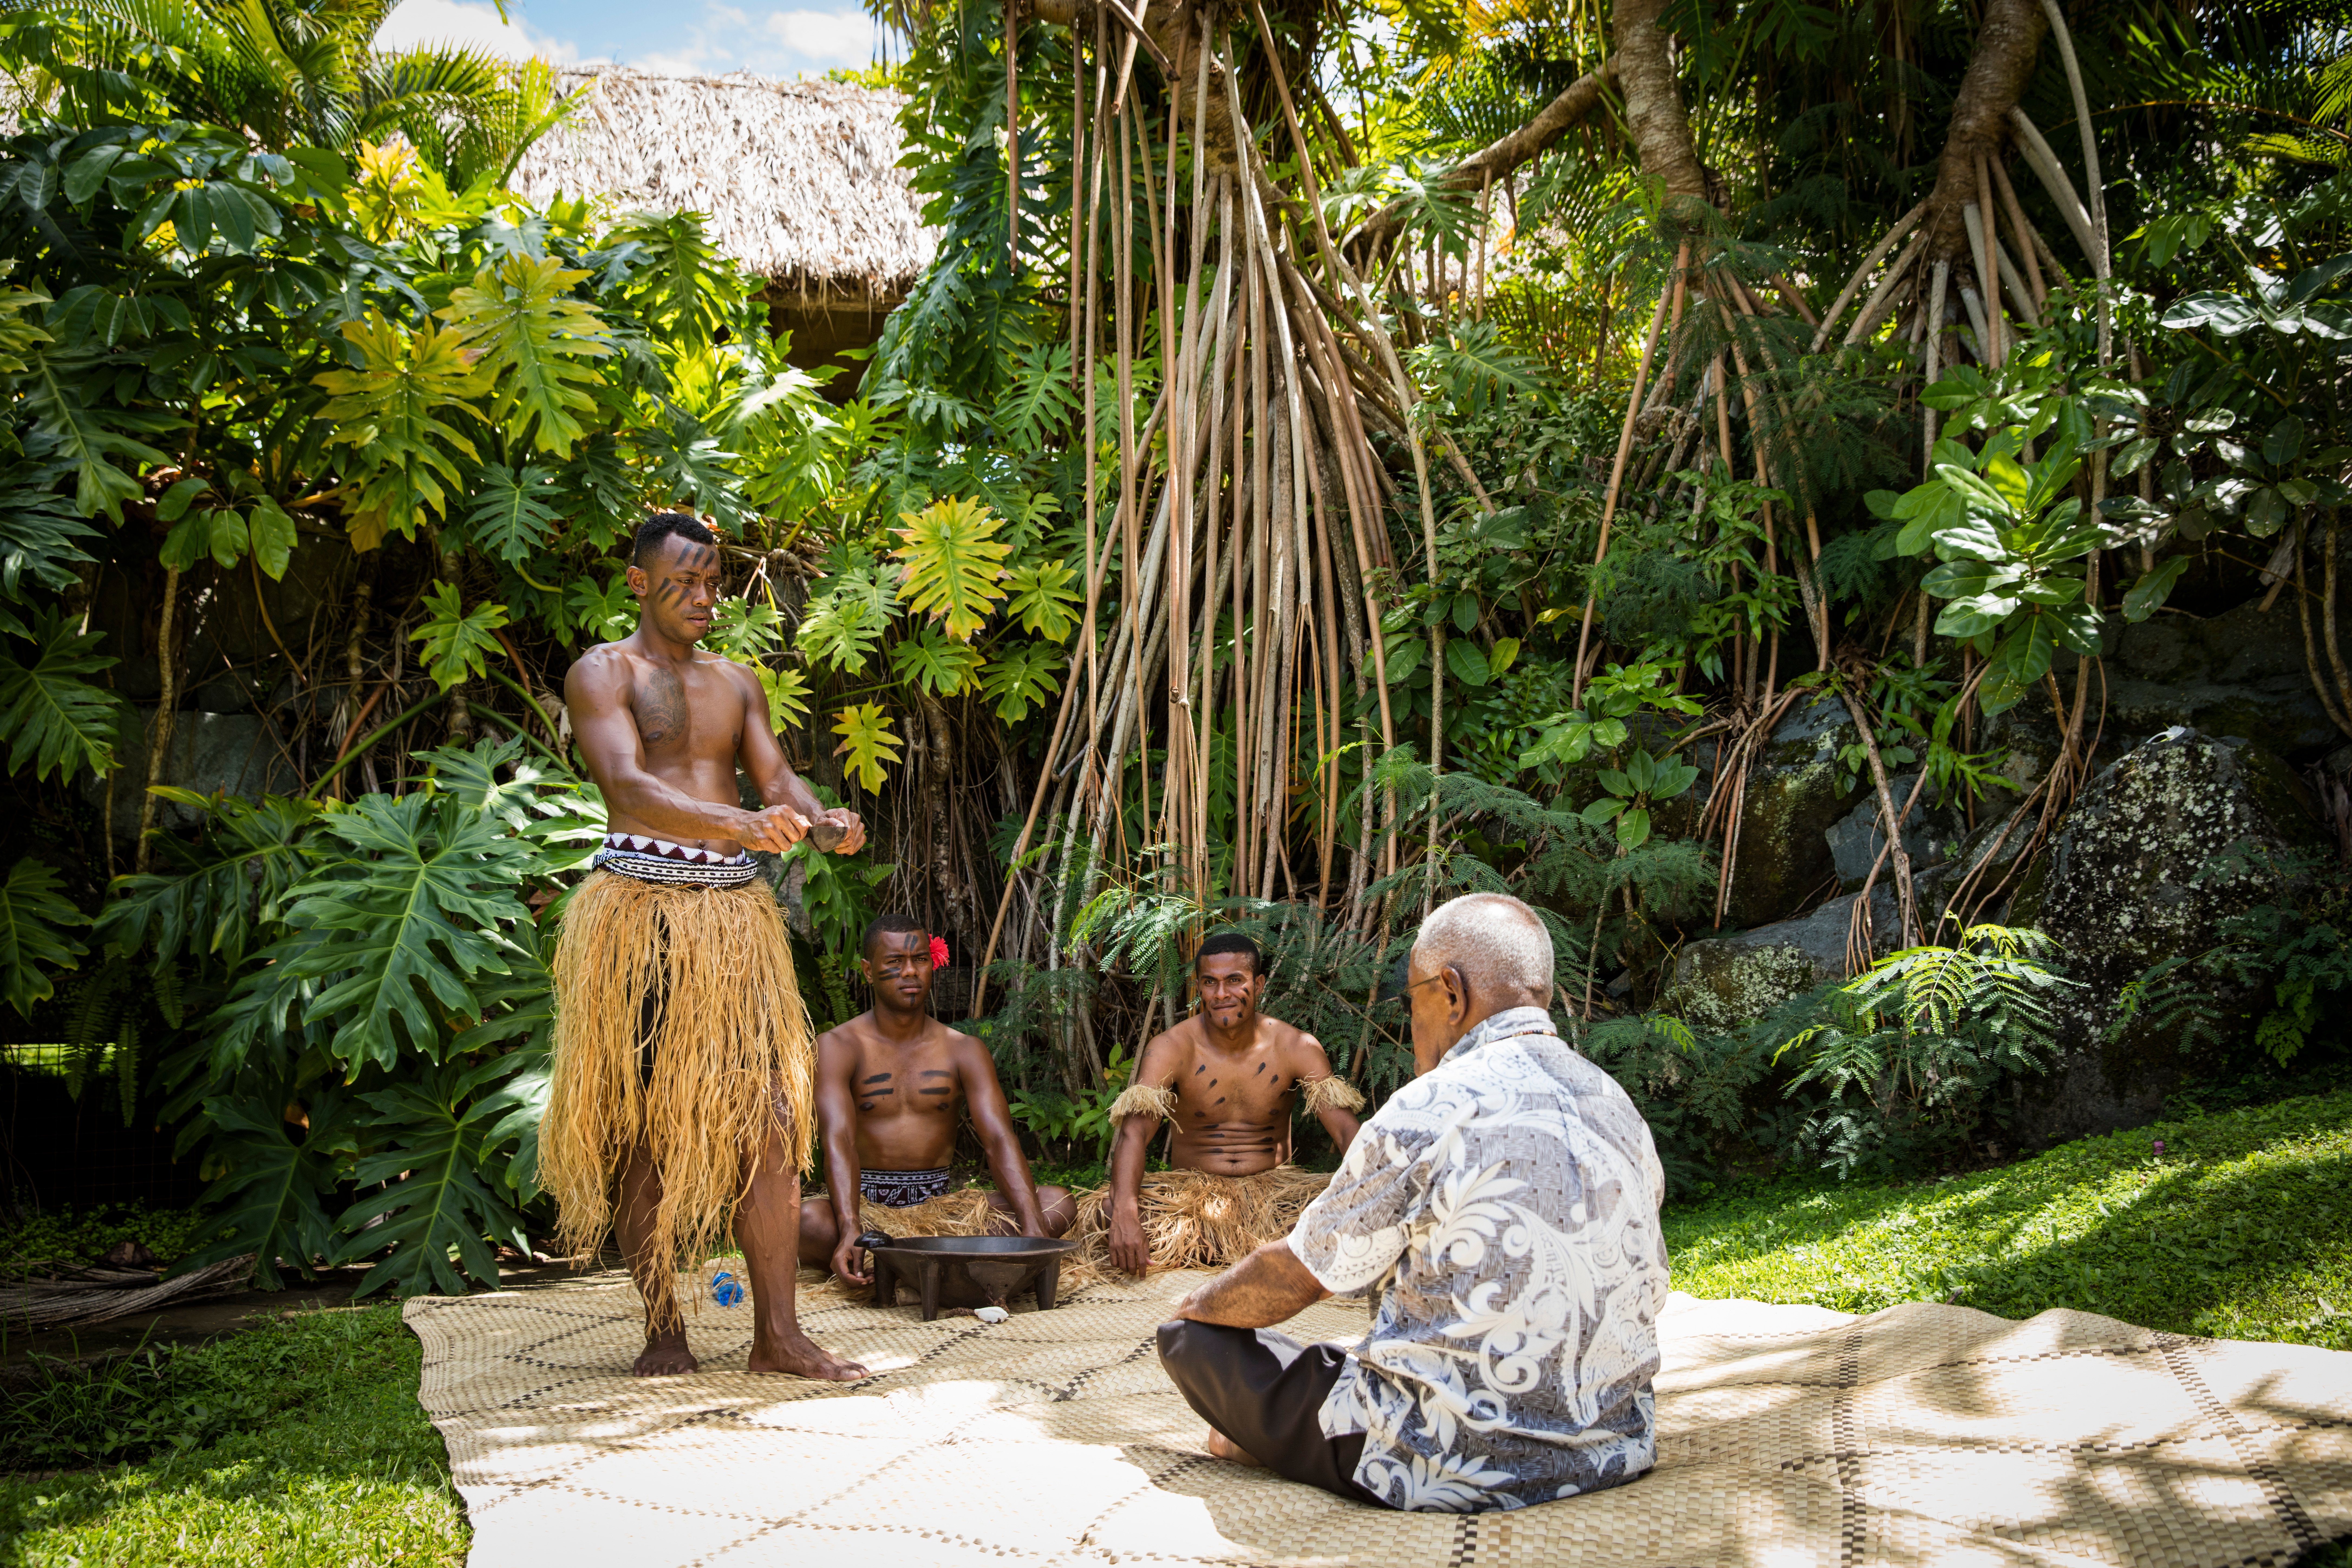 Kava ceremony in Fiji